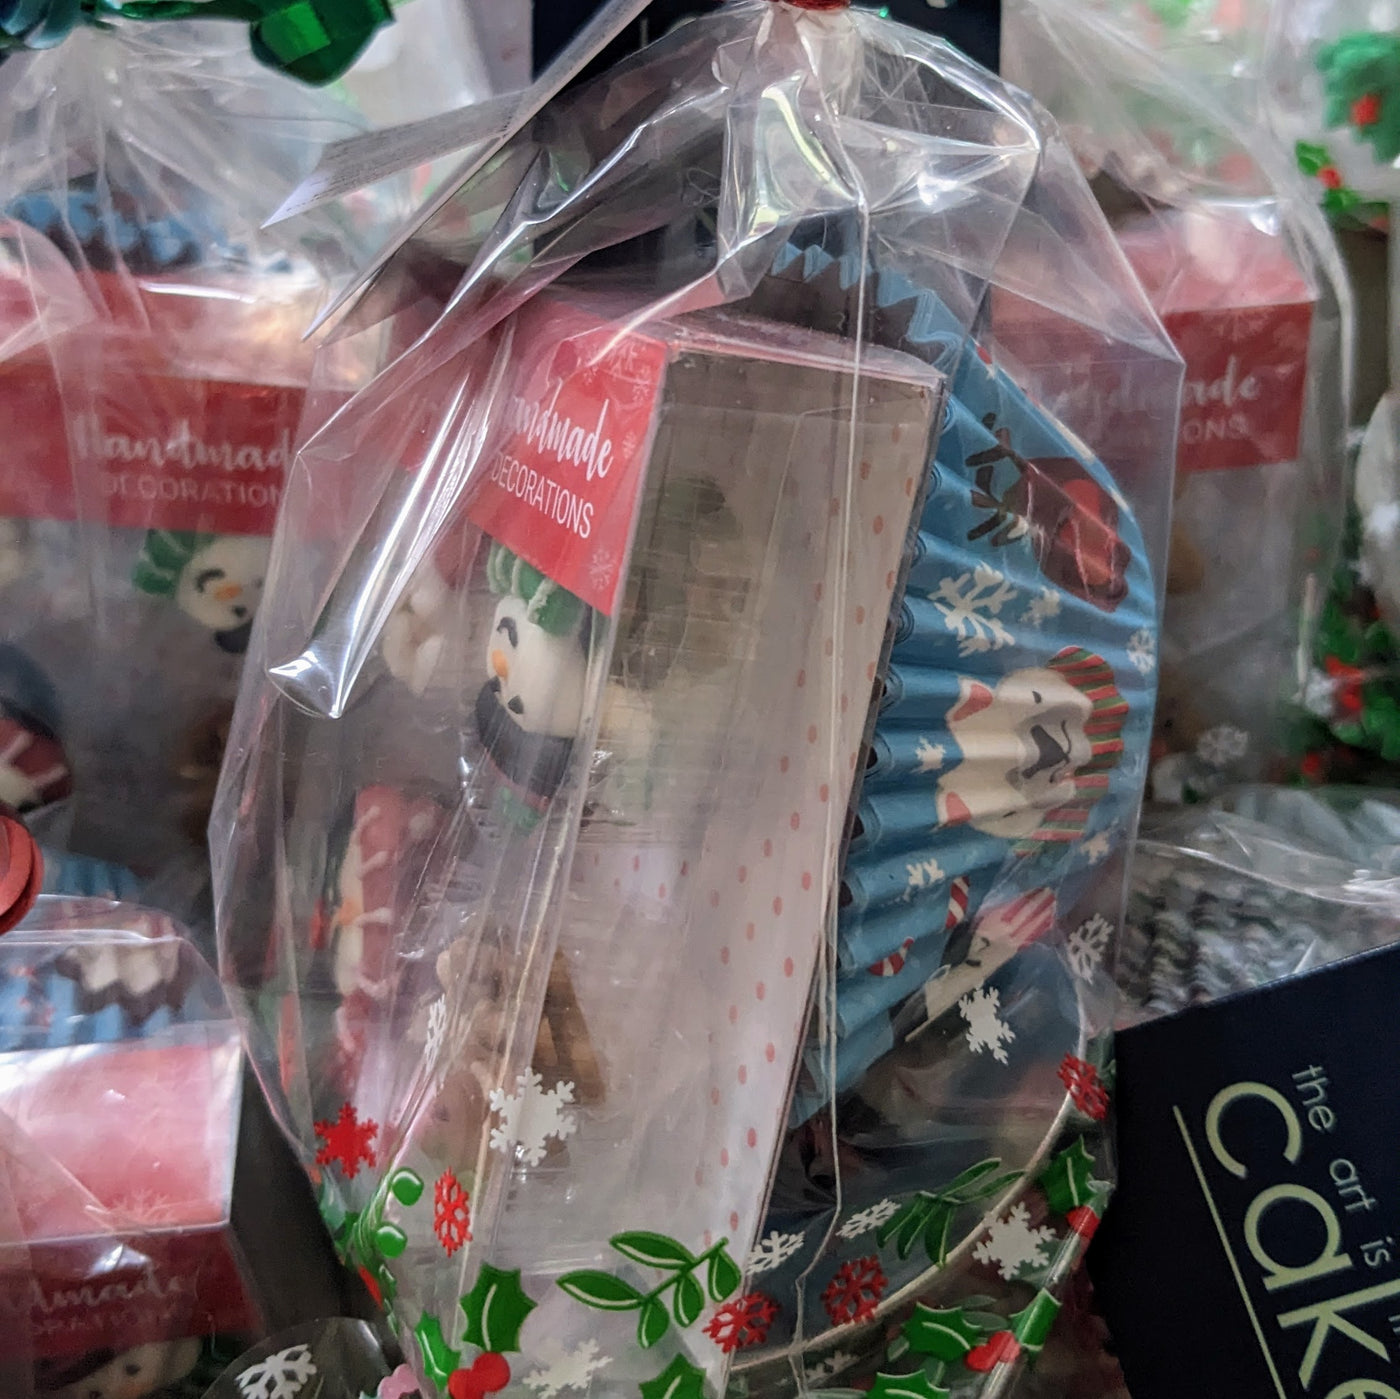 Christmas Cupcake Kits